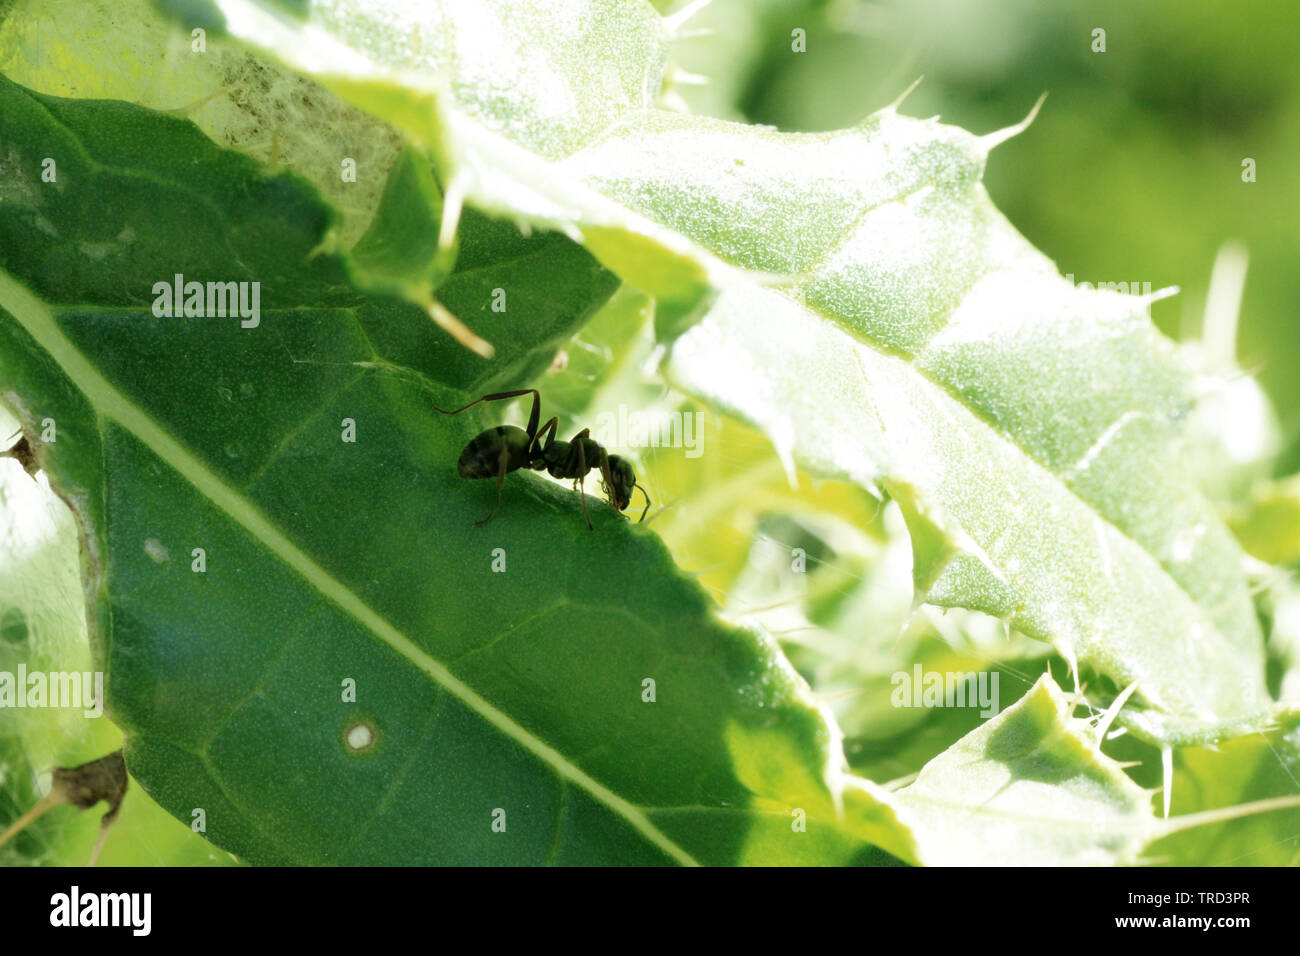 Ameise auf Distelblatt / Ant on a Thistle Stock Photo